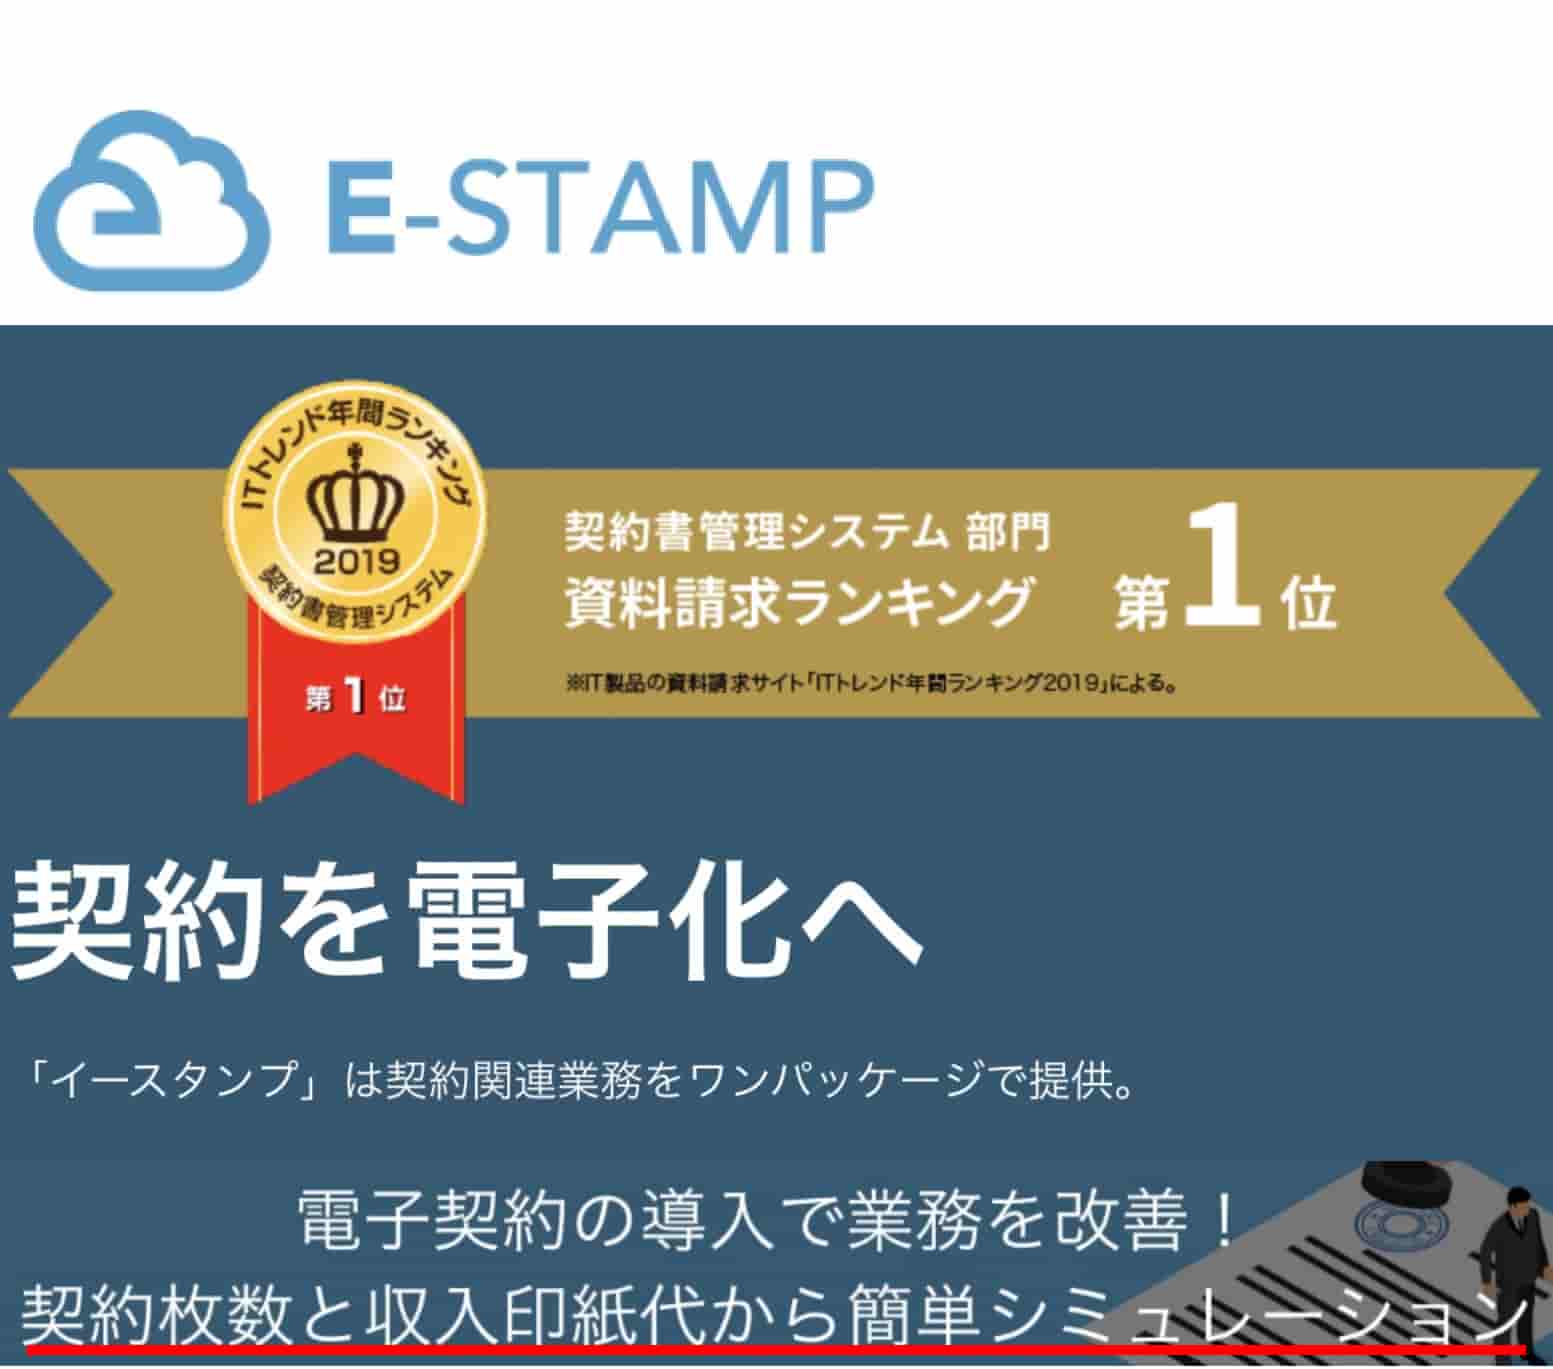 E-STAMP